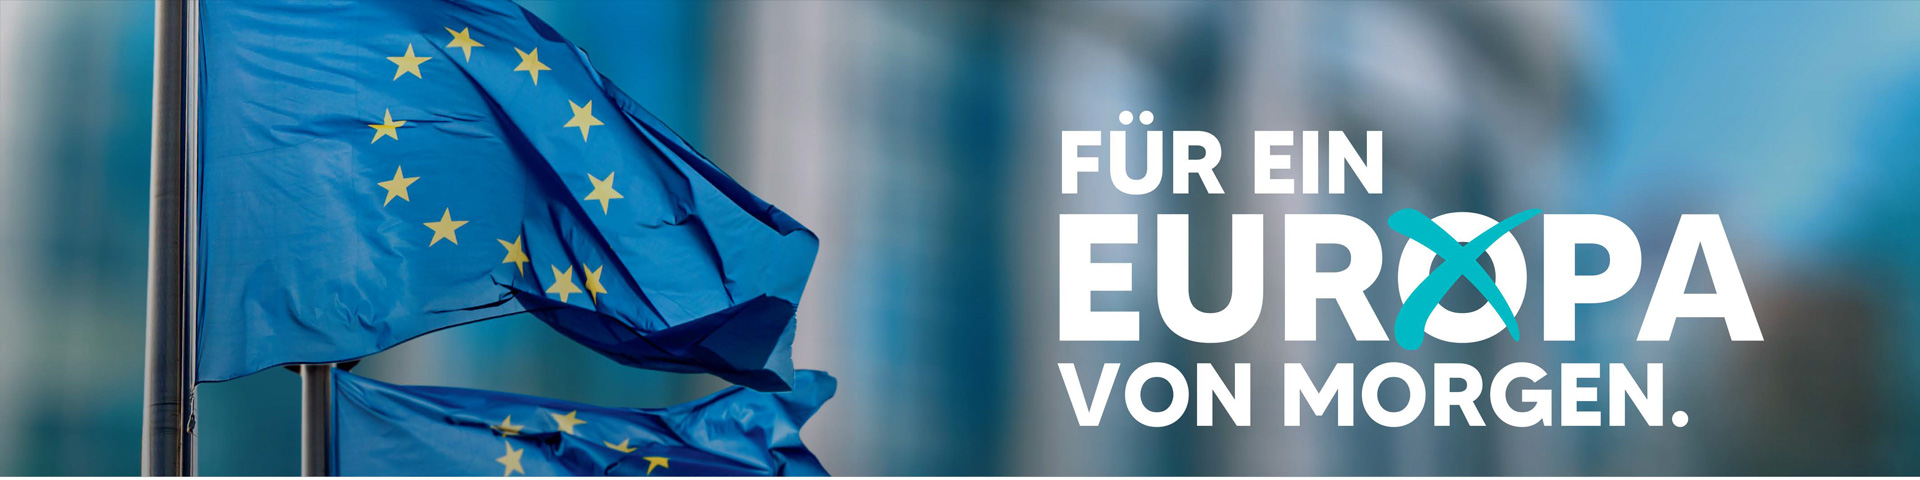 Foto JVP Eu-Flaggen und Text Für ein Europa von morgen.